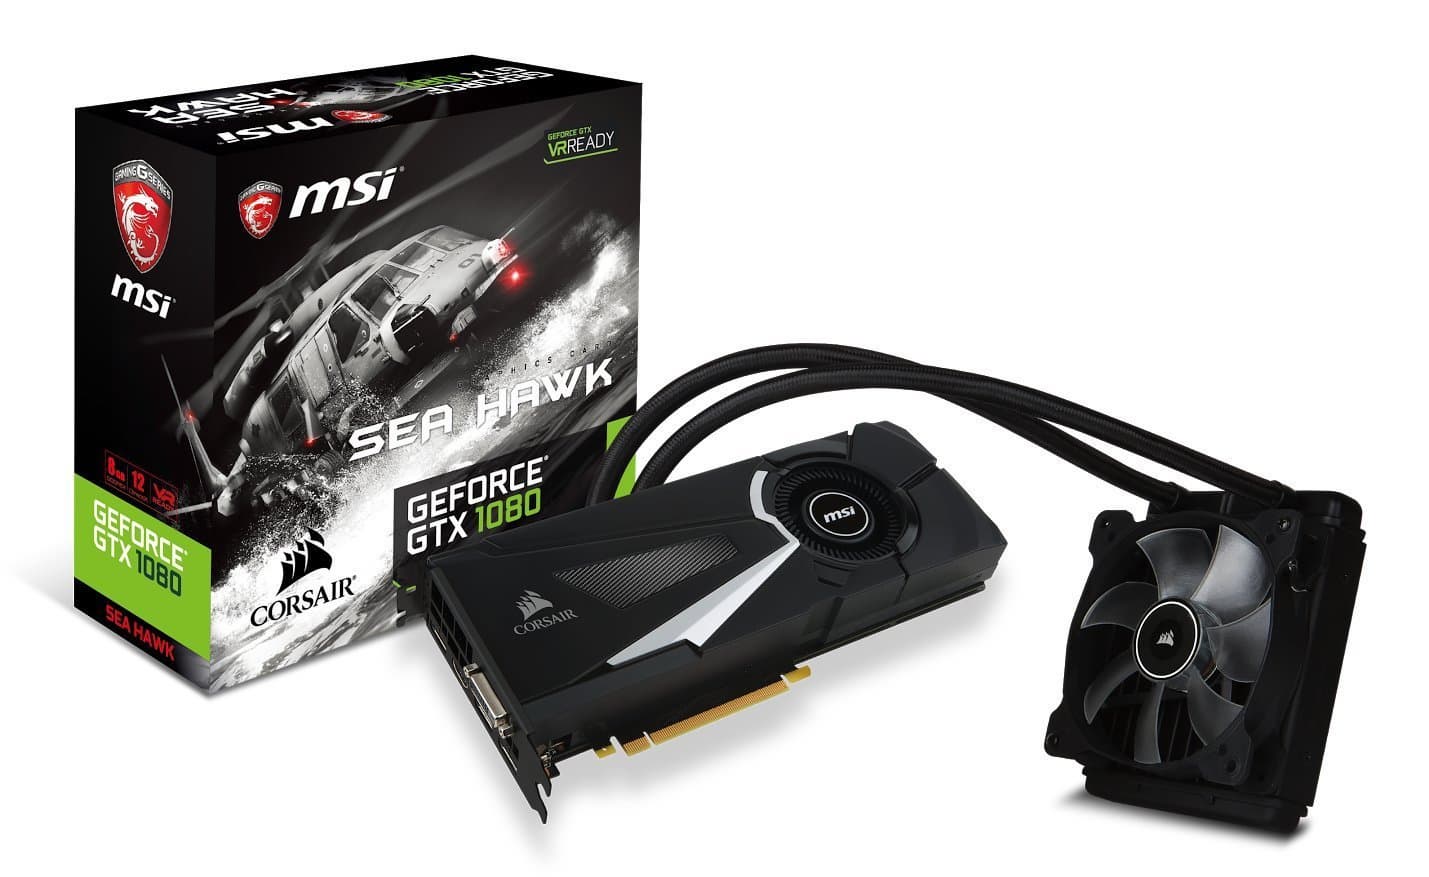 MSI Gaming GeForce GTX 1080 8GB GDDR5X SLI DirectX 12 VR